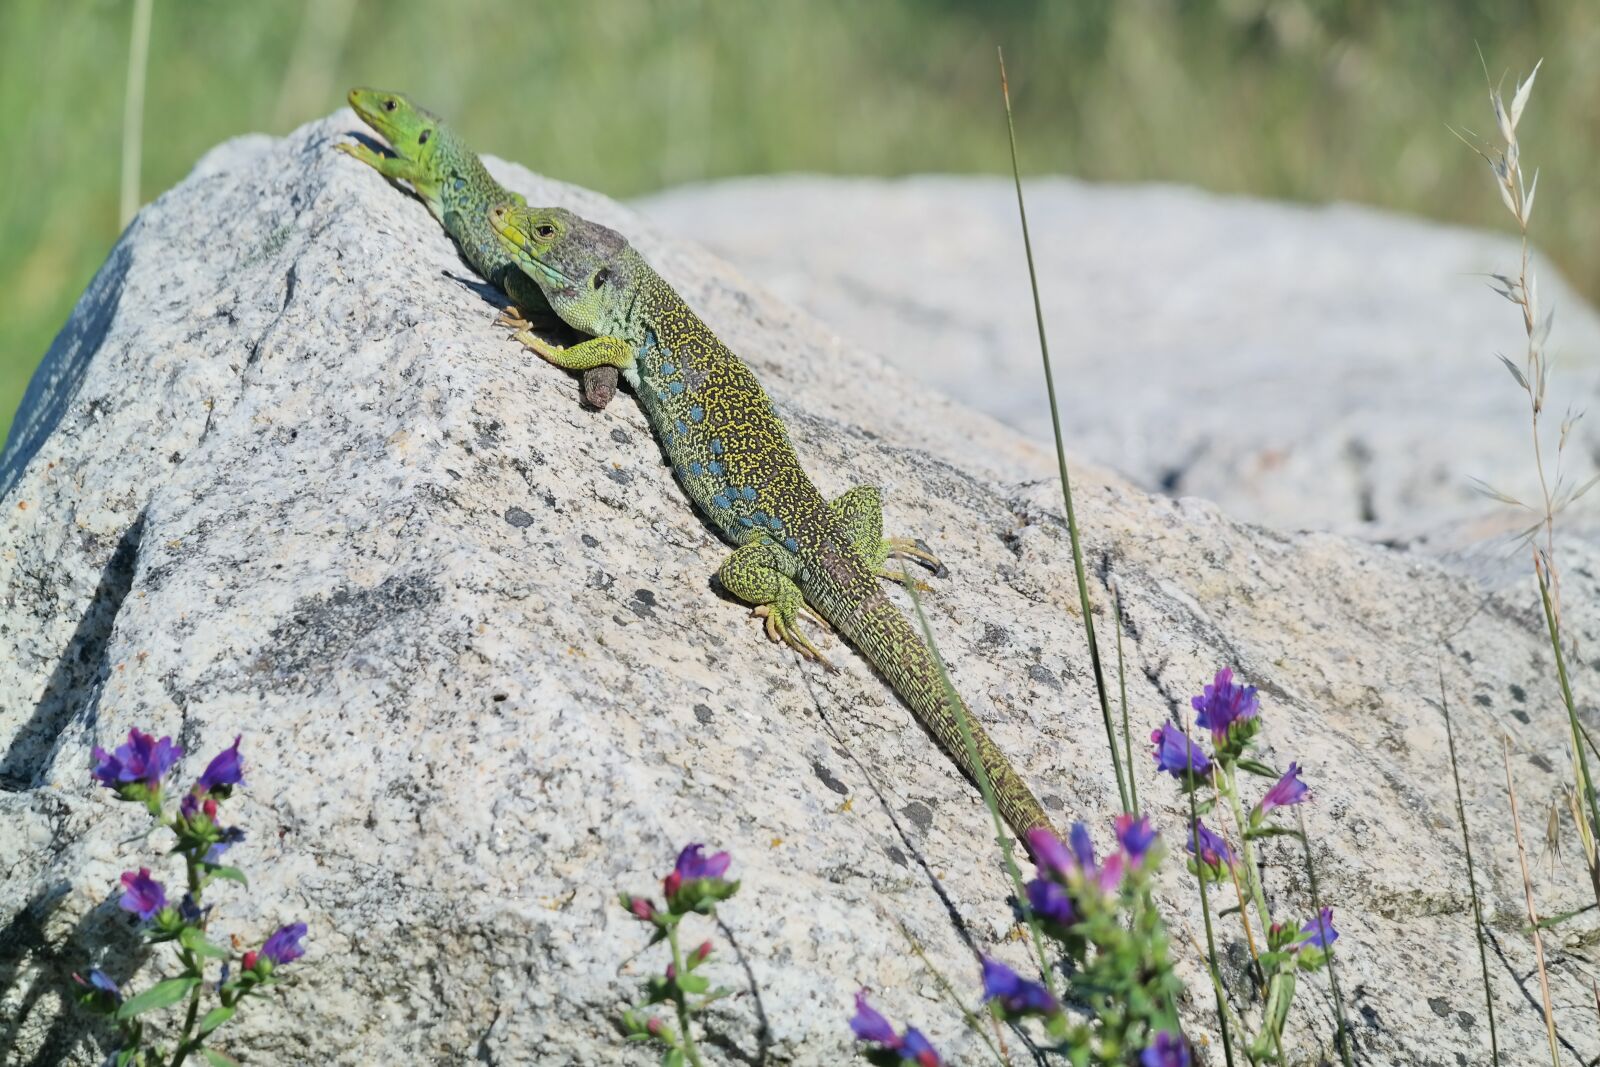 Samsung NX300 sample photo. Lizards, lizard, sun photography